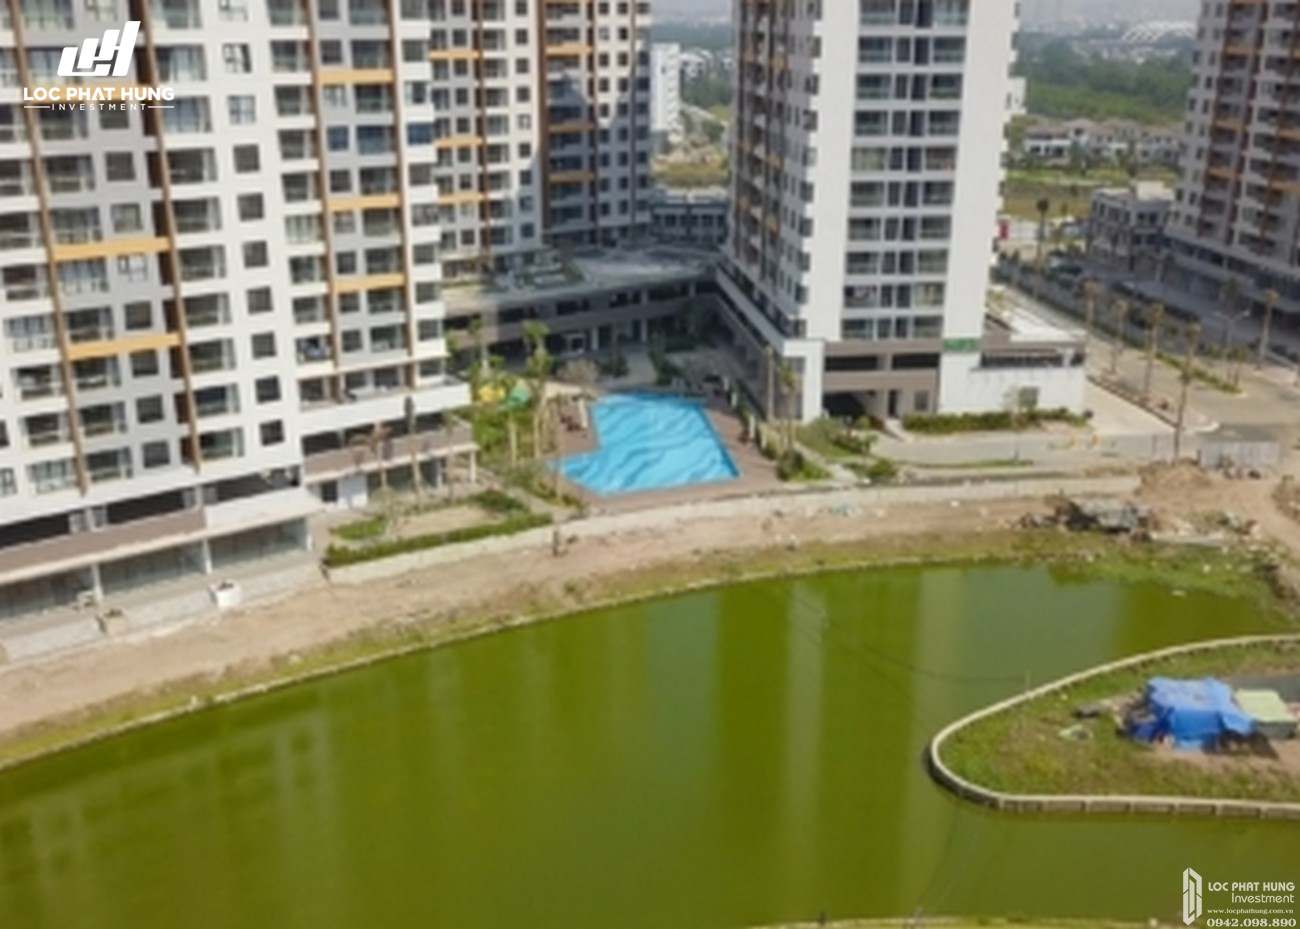 Tiến độ xây dựng dự án căn hộ chung cư Mizuki Park Bình Chánh Đường Nguyễn Văn Linh chủ đầu tư Nam Long ngày 20/02/2020